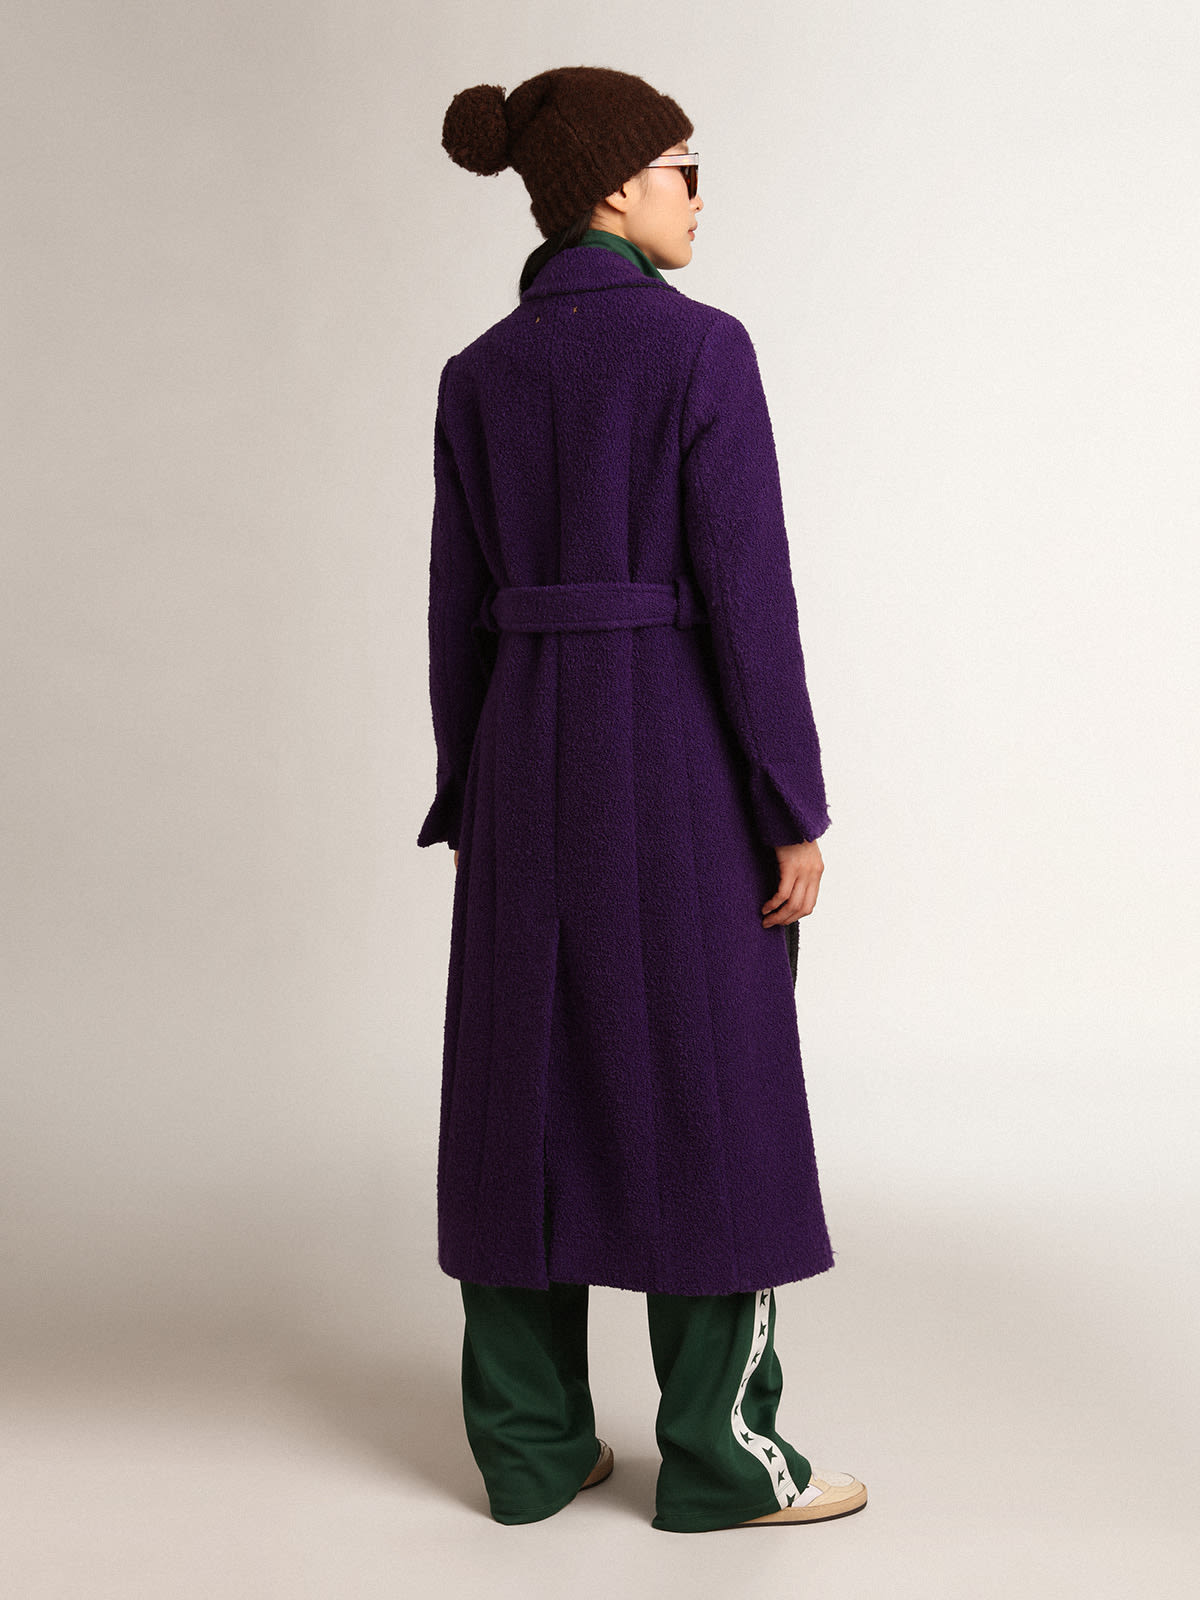 Golden Goose - Women's coat in indigo purple wool with printed lining in 